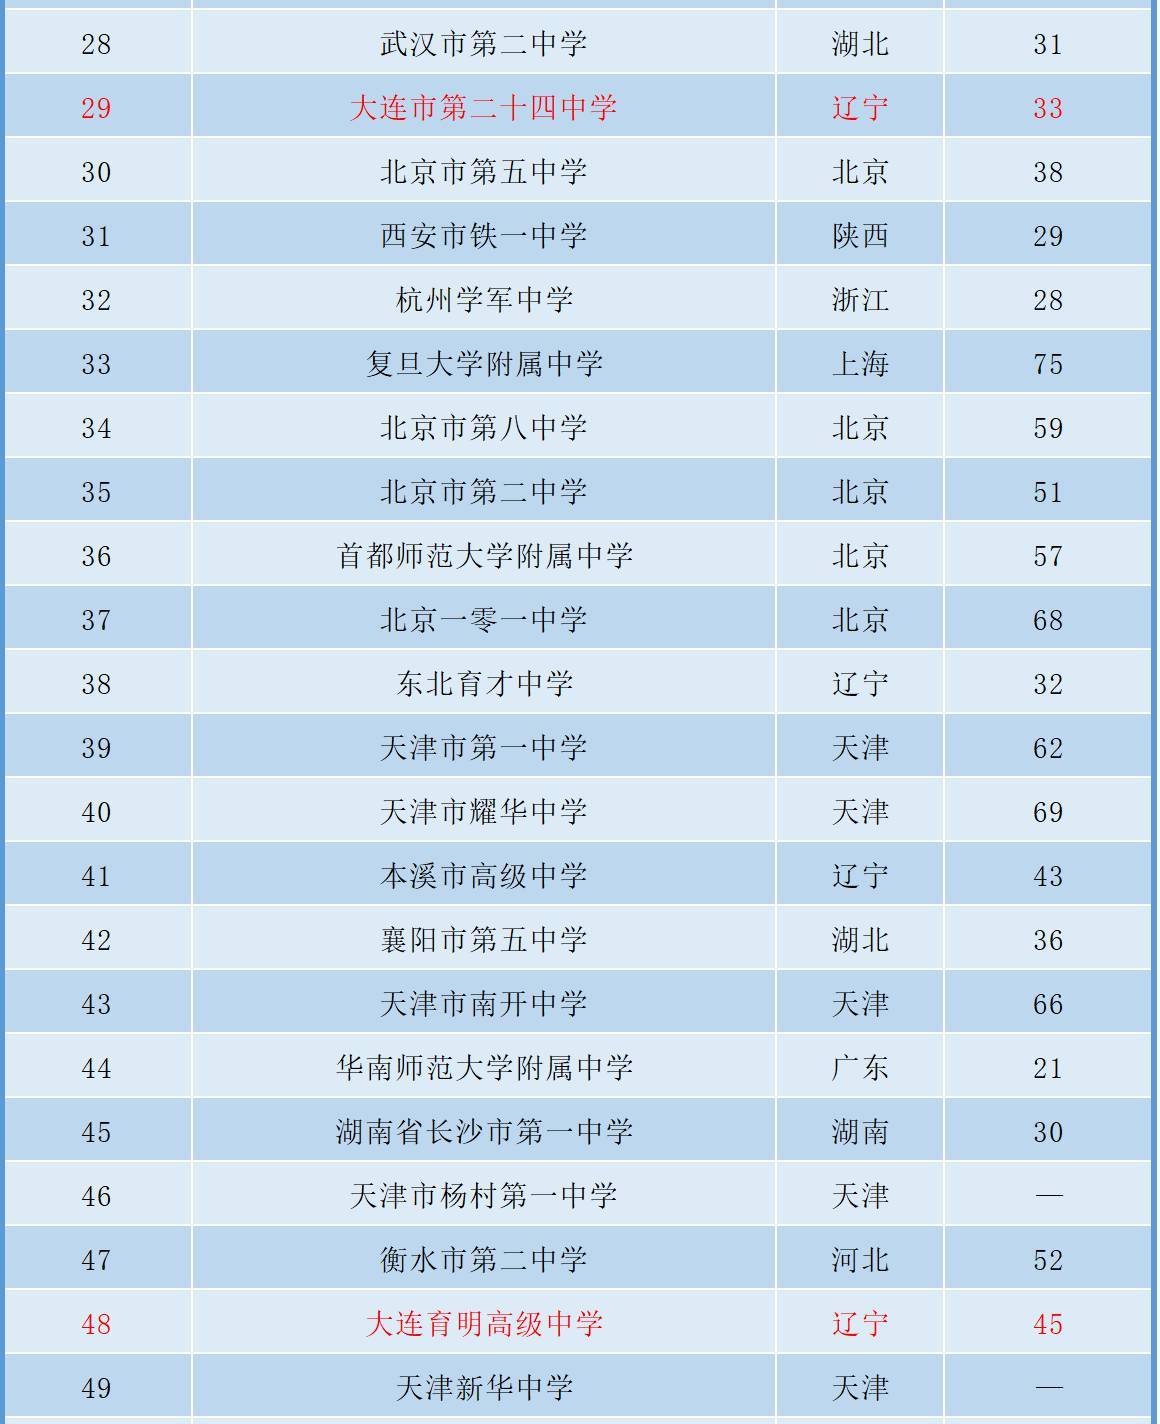 最新中国顶尖中学100强排名:大连2所高中上榜,第二十四中29名